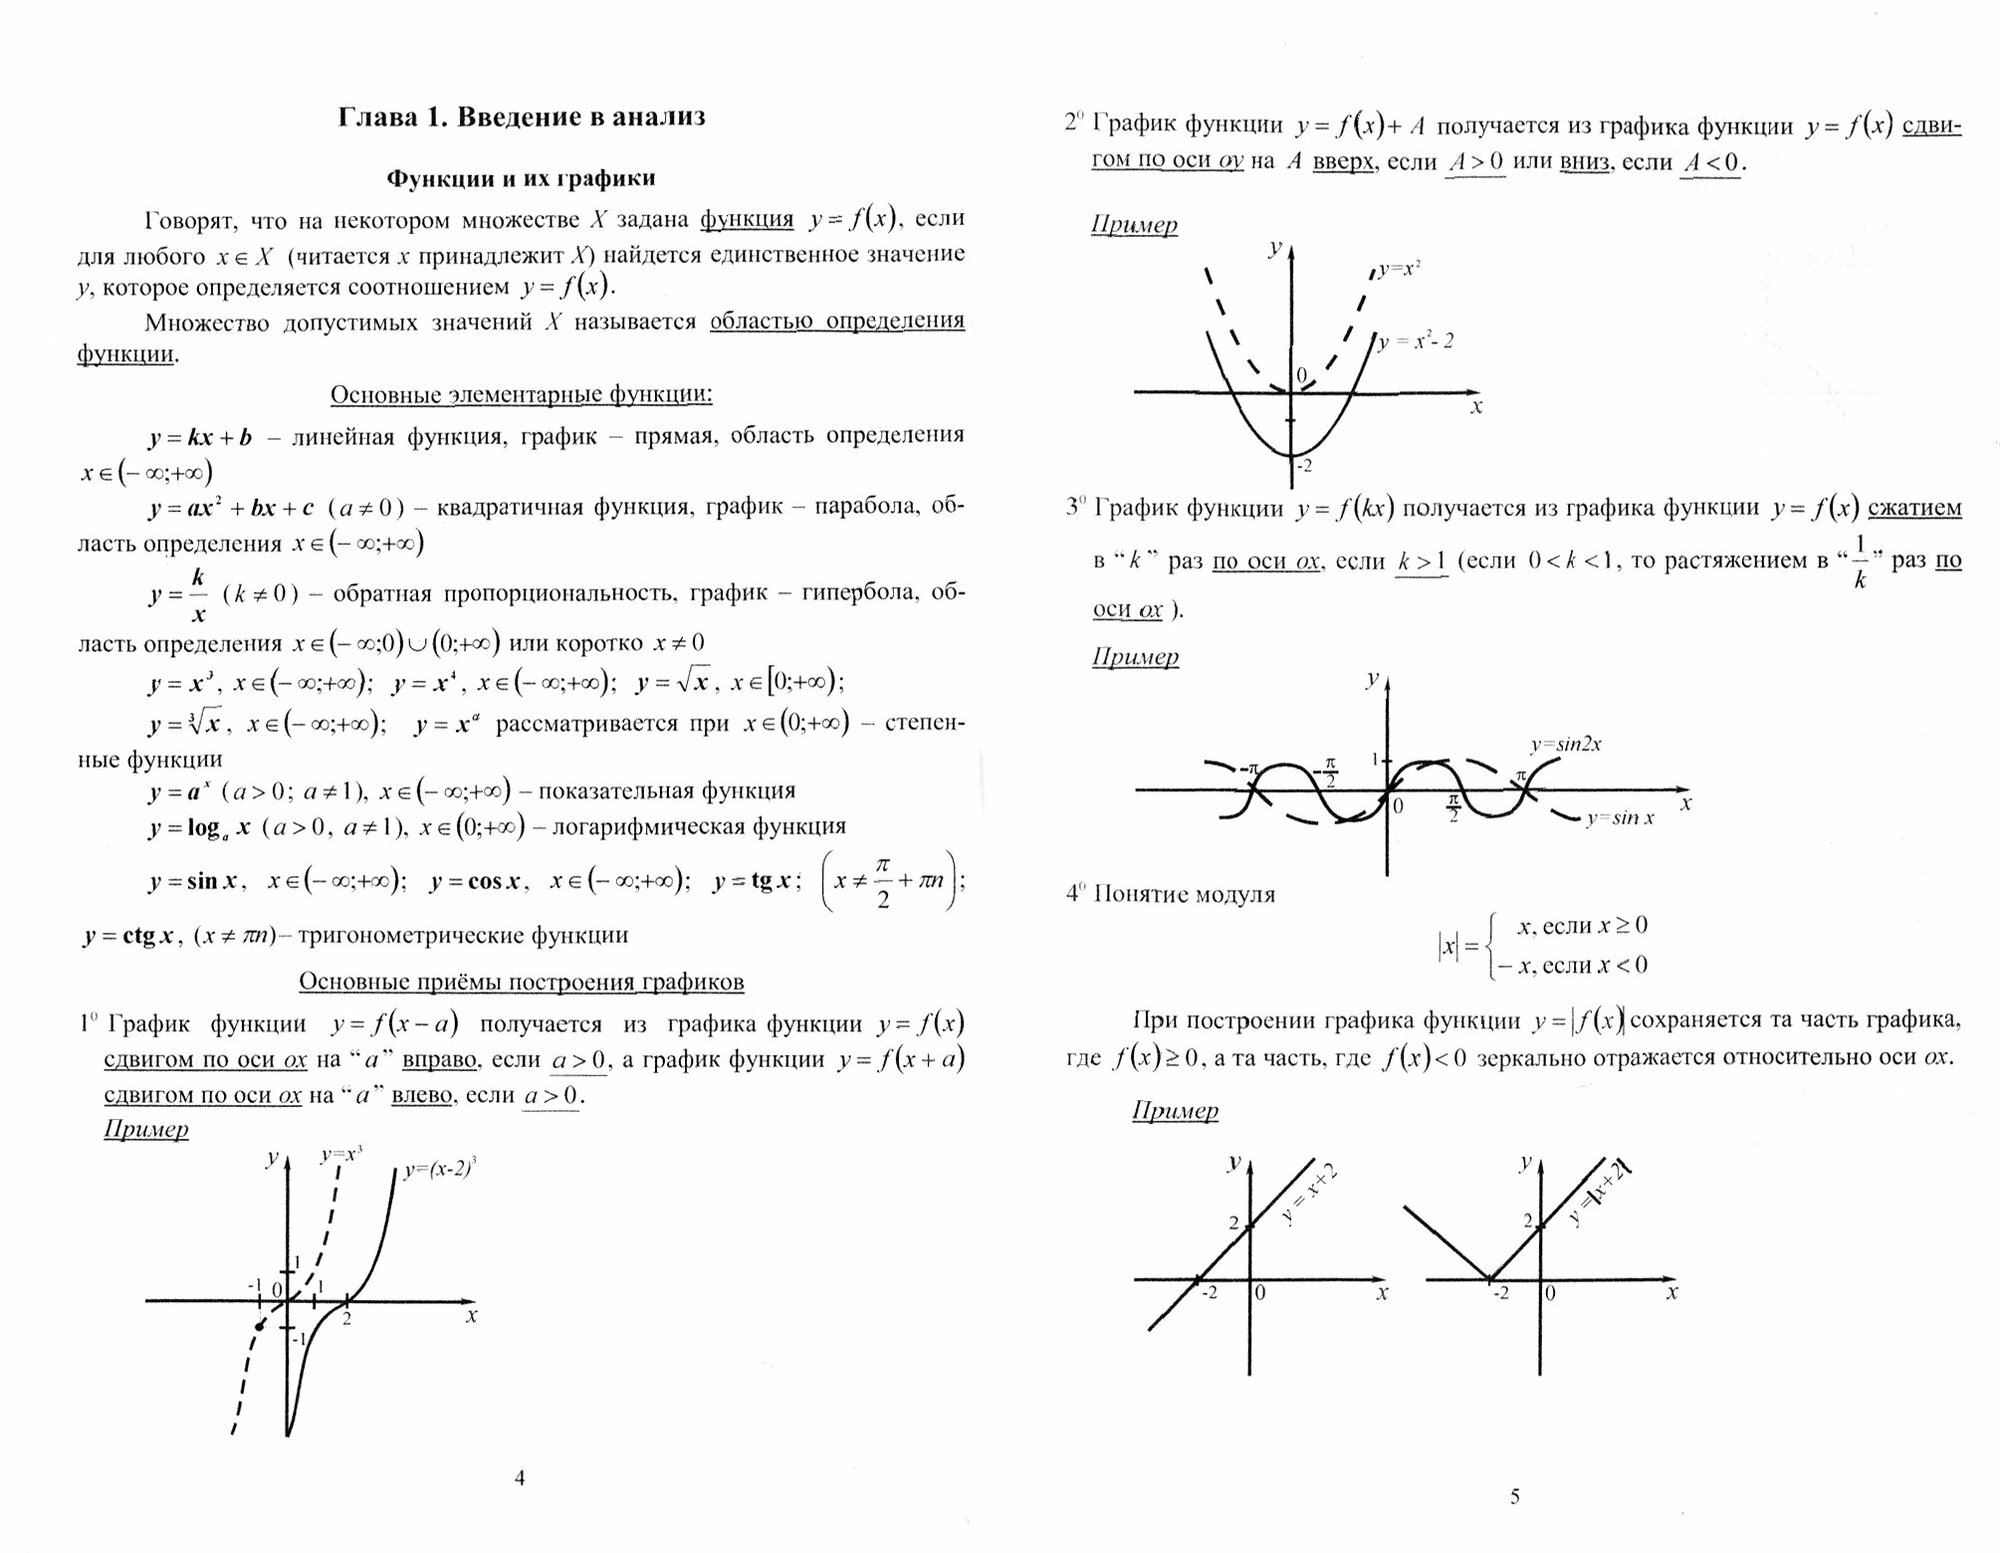 Сборник заданий по высшей математике с образцами решений. Учебно-методическое пособие - фото №2